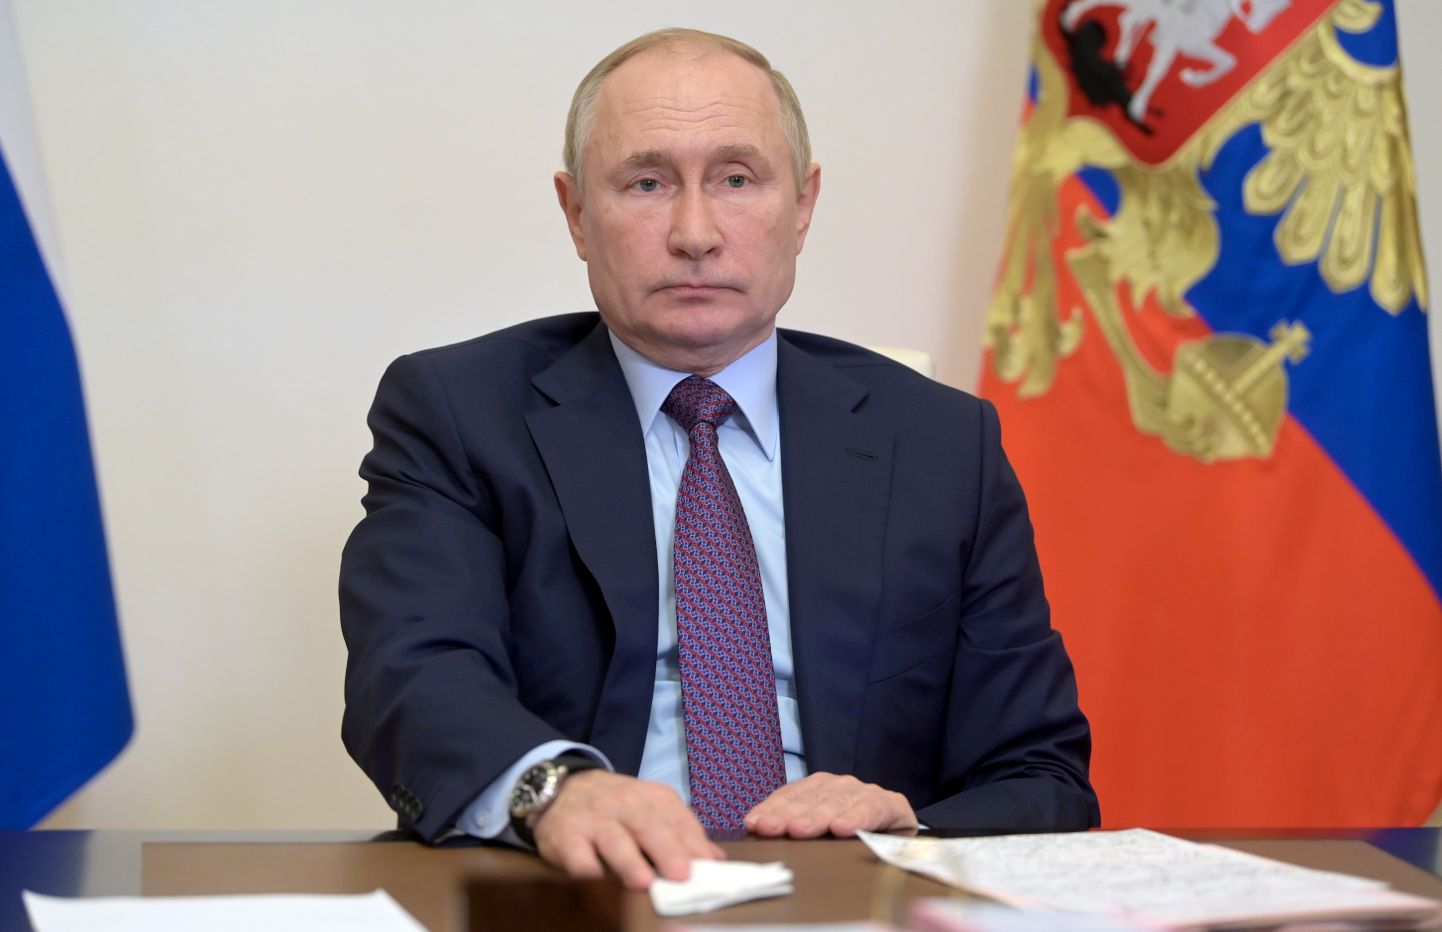 Venemaa president Vladimir Putin kolmapäeval toimunud valitsuse istungil.